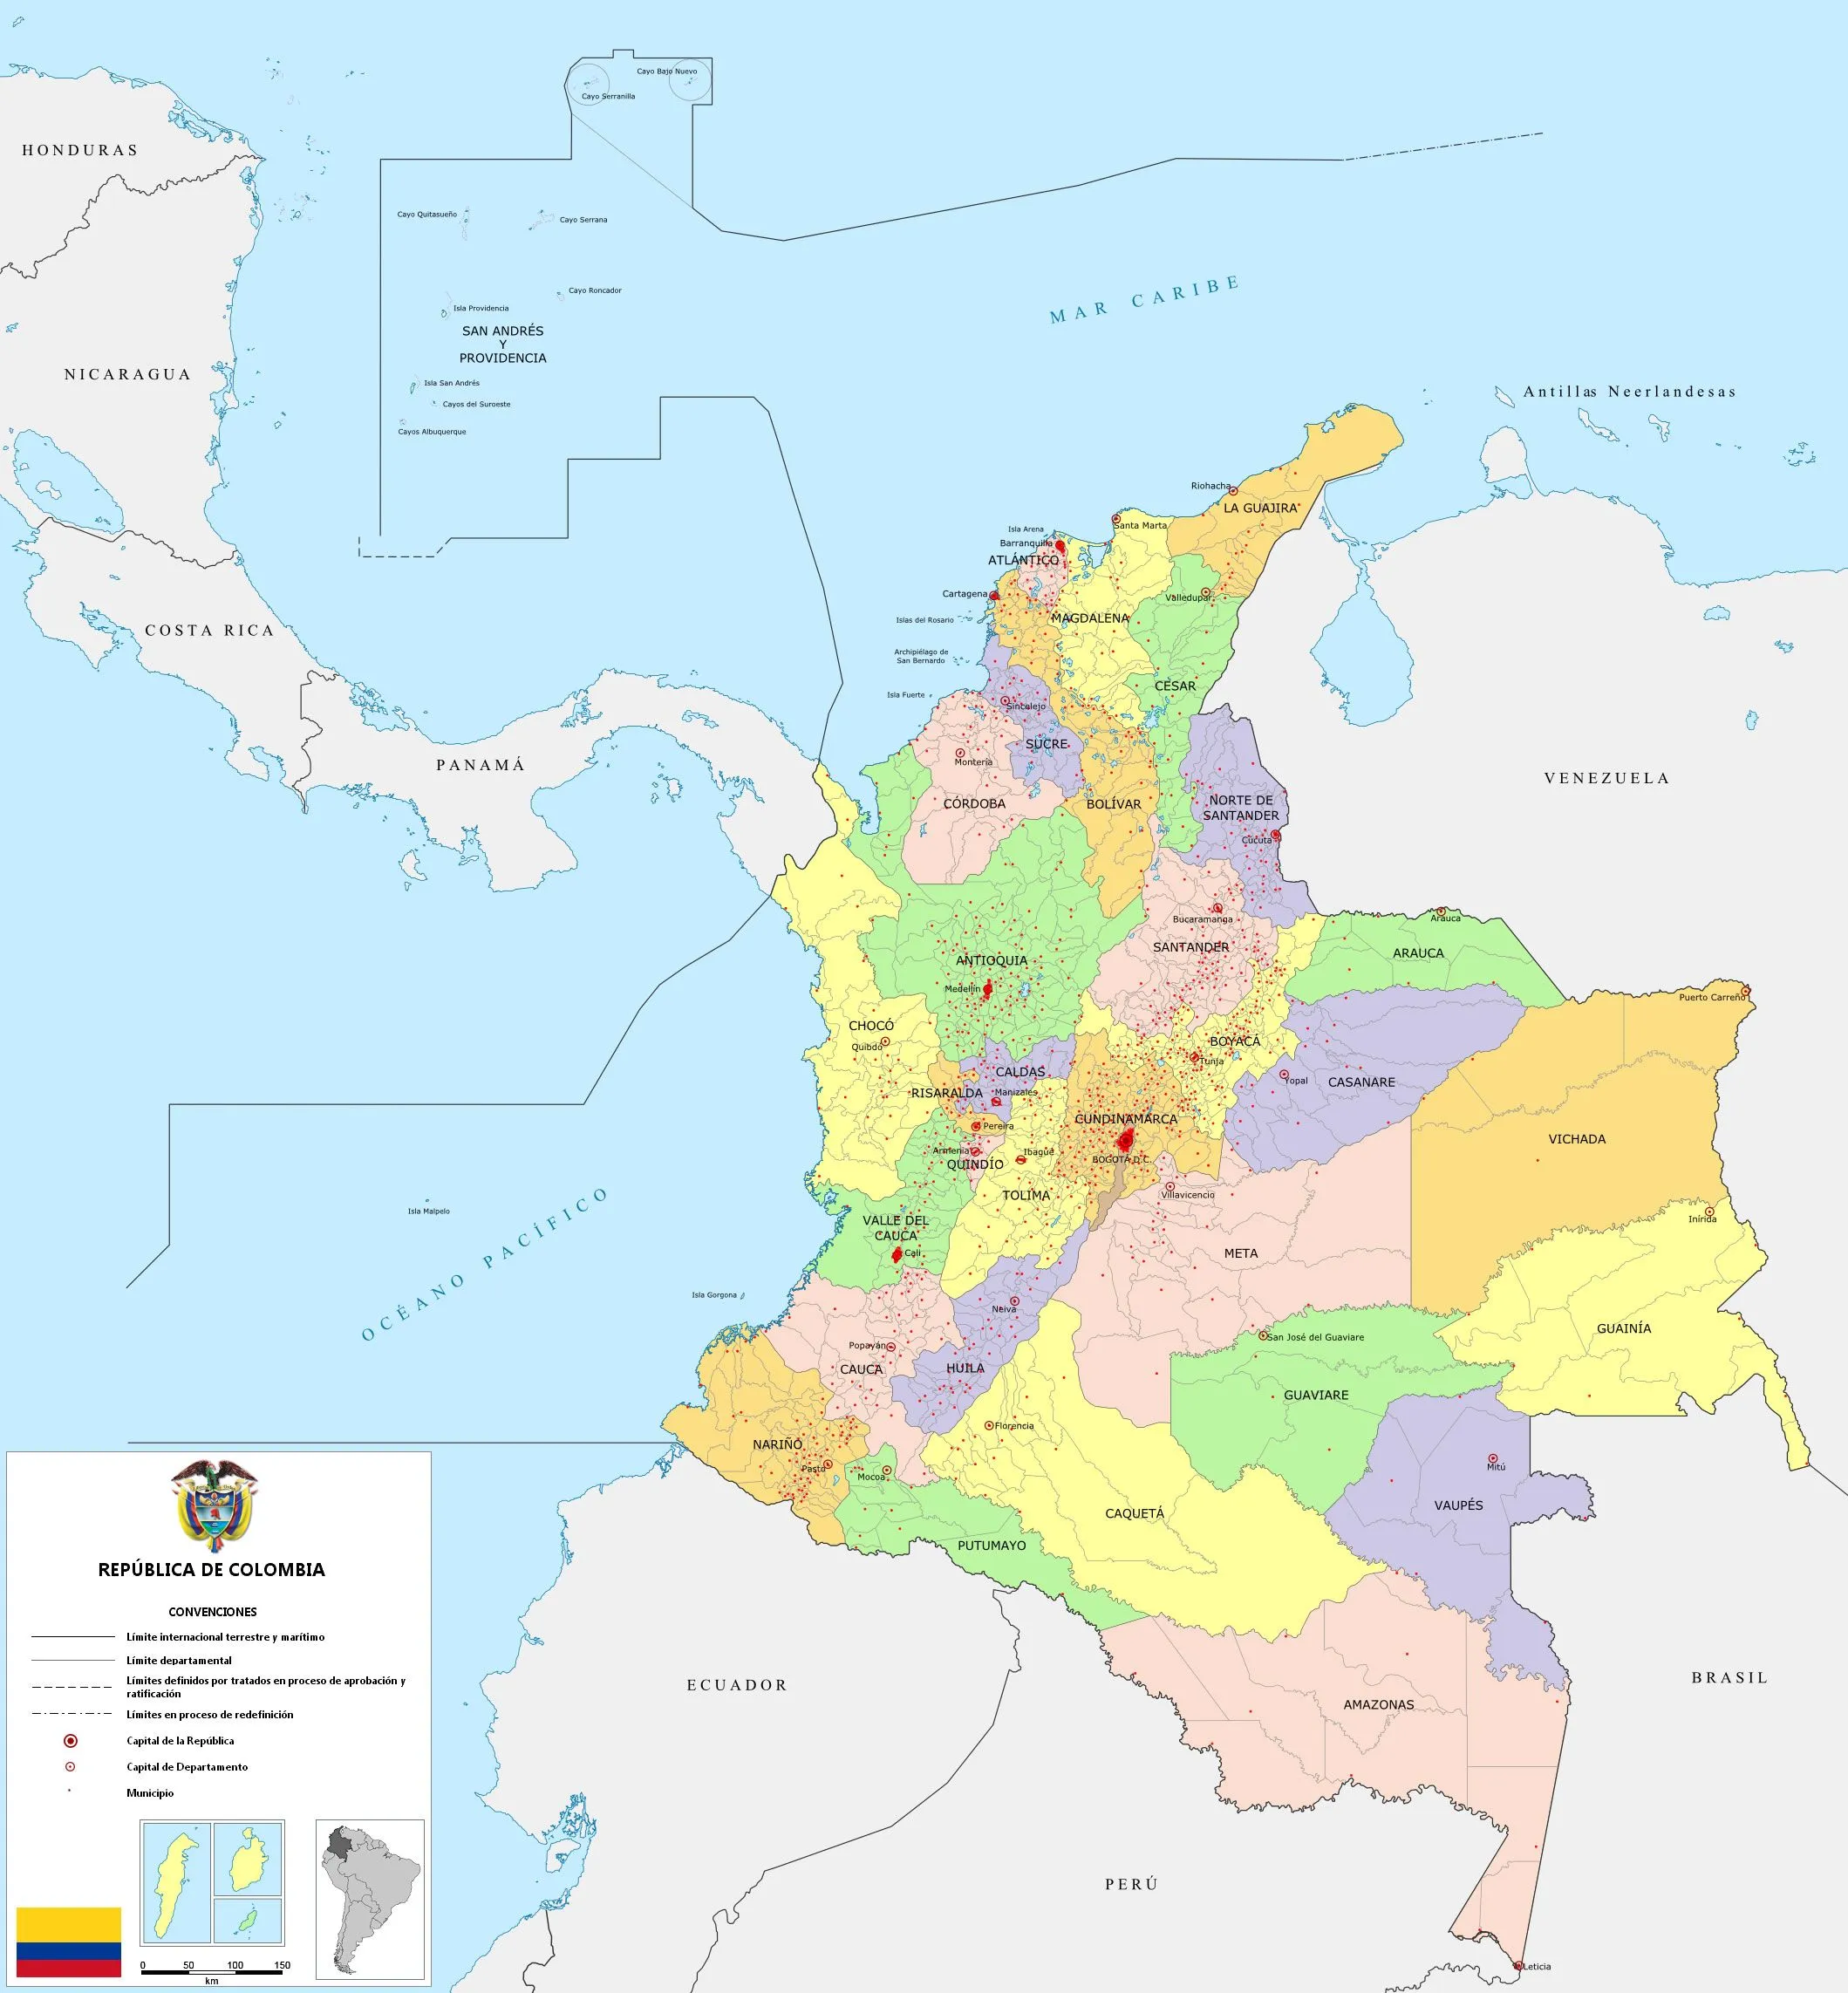 Mapa político de Colombia 2009 - Tamaño completo